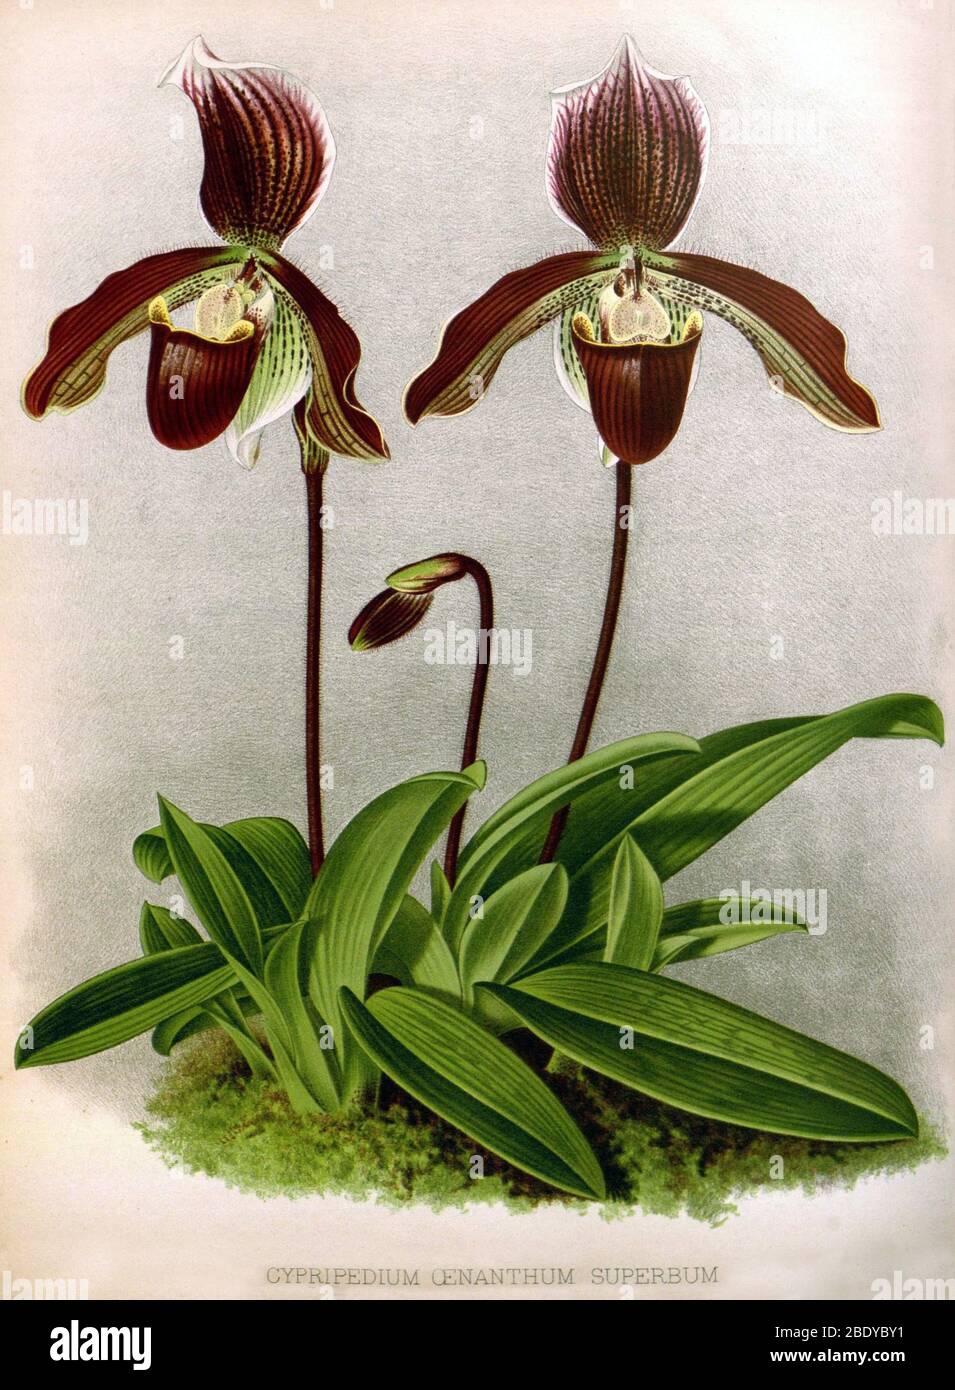 Orchidee, C. oenanthum superbum, 1891 Stockfoto